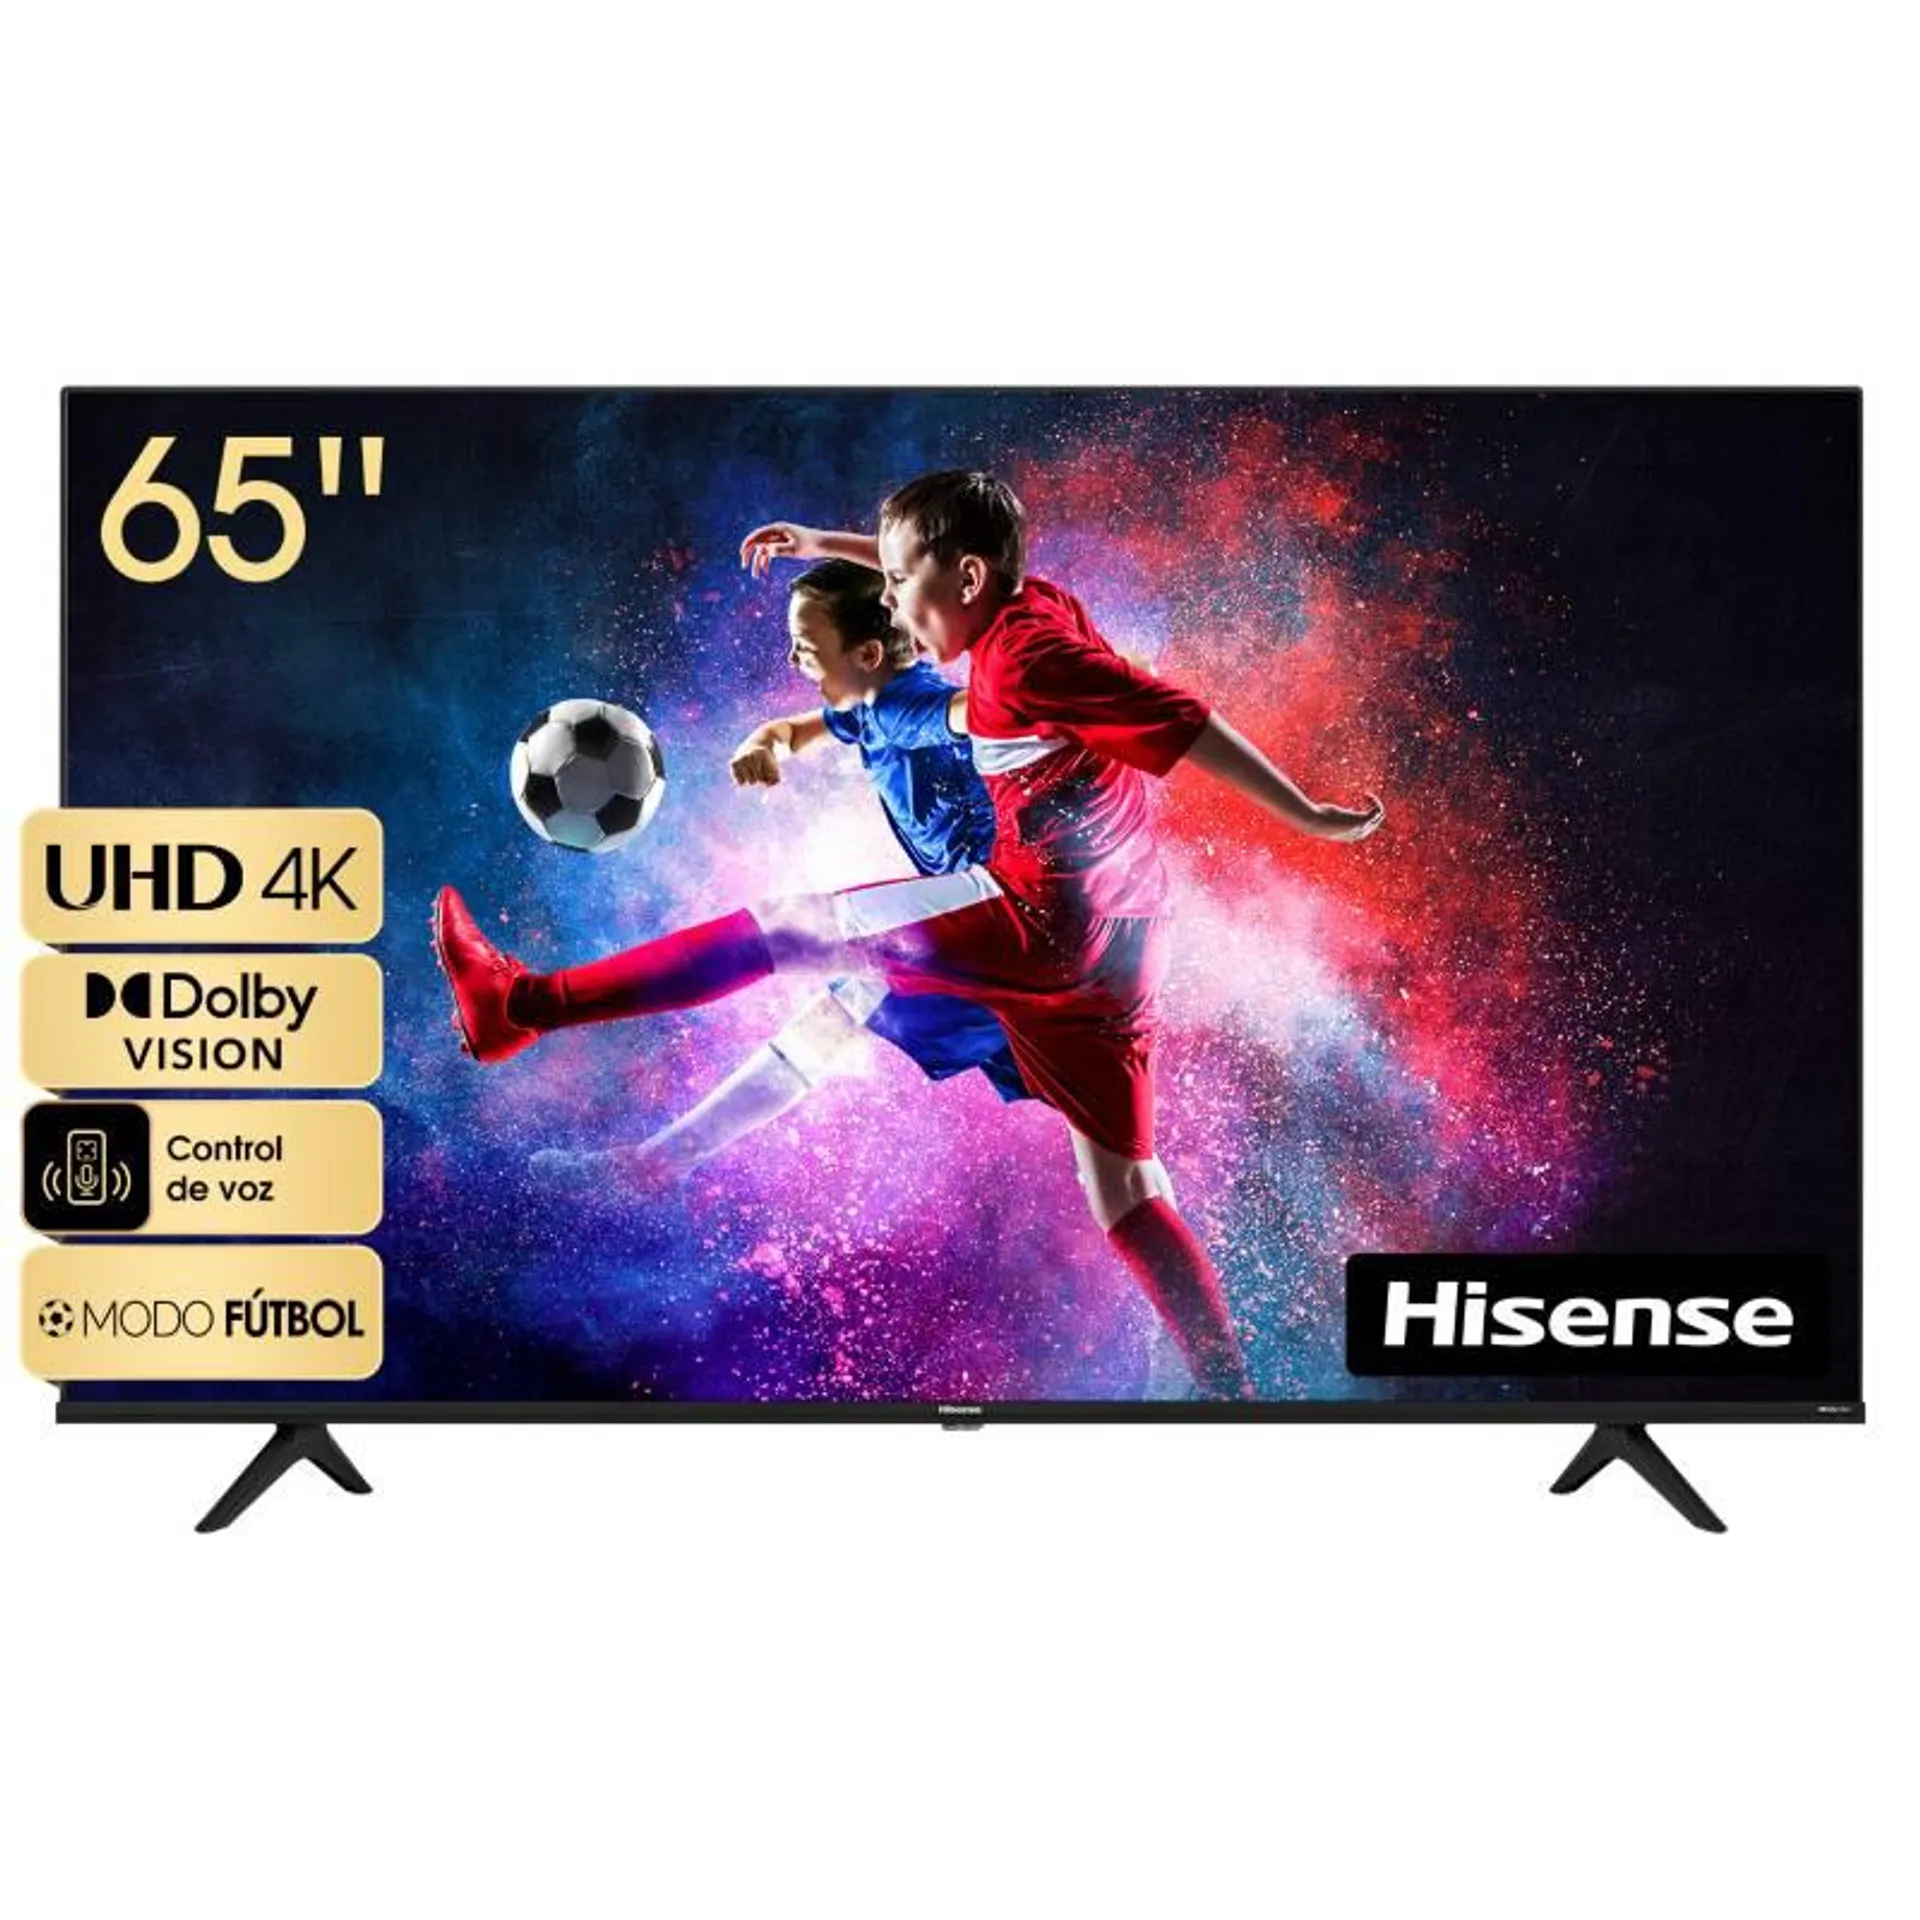 Smart TV UHD 4K 65'' Vidaa Dolby Vision 65A6H